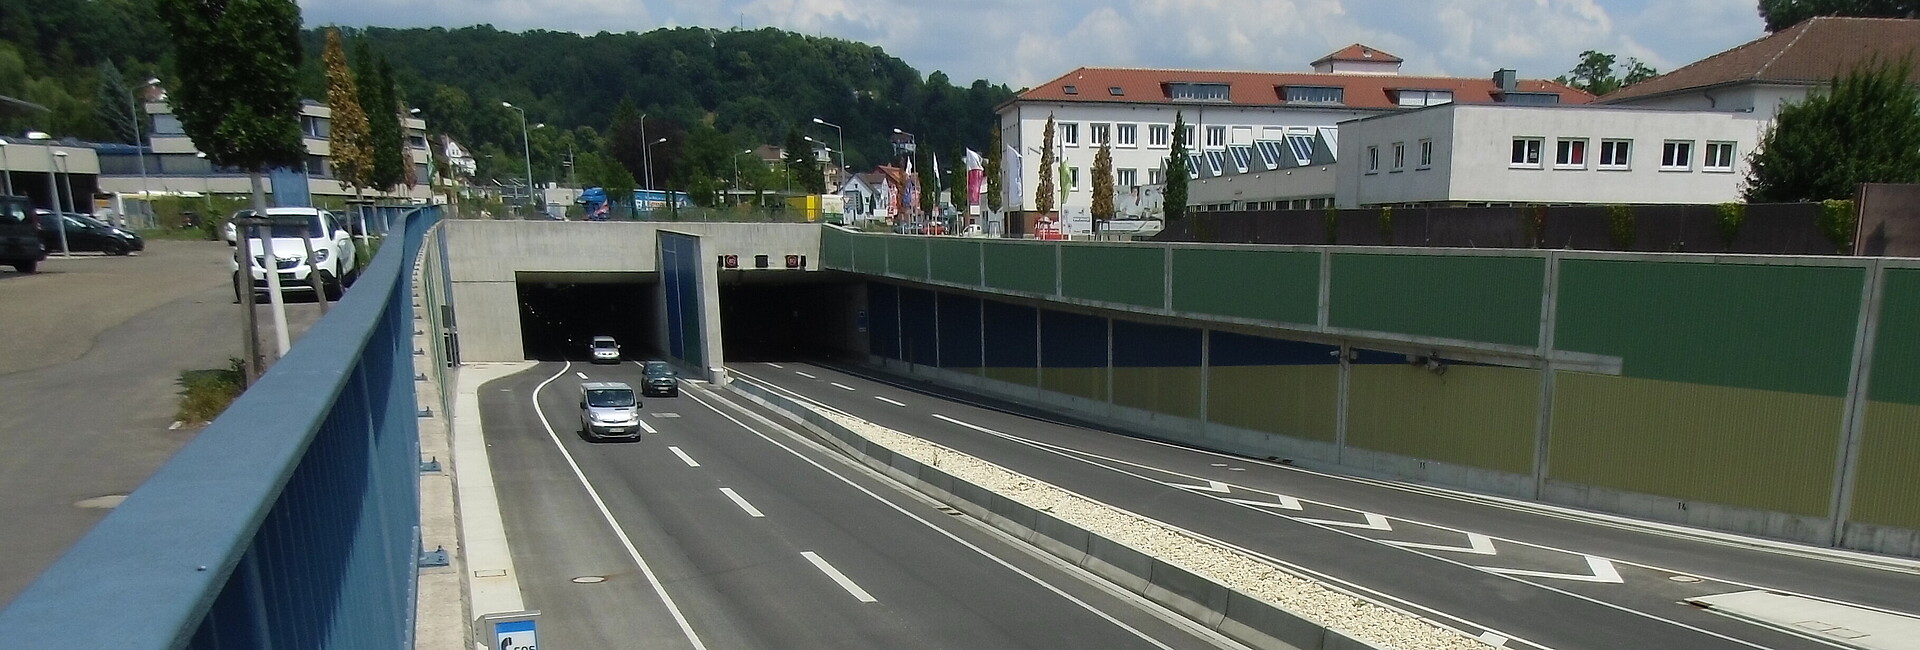 Einfahrt in den Tunnel in Schwäbisch Gmünd, man sieht eine wenig befahrene Straße, die in den Tunnel führt, daneben Gebäude